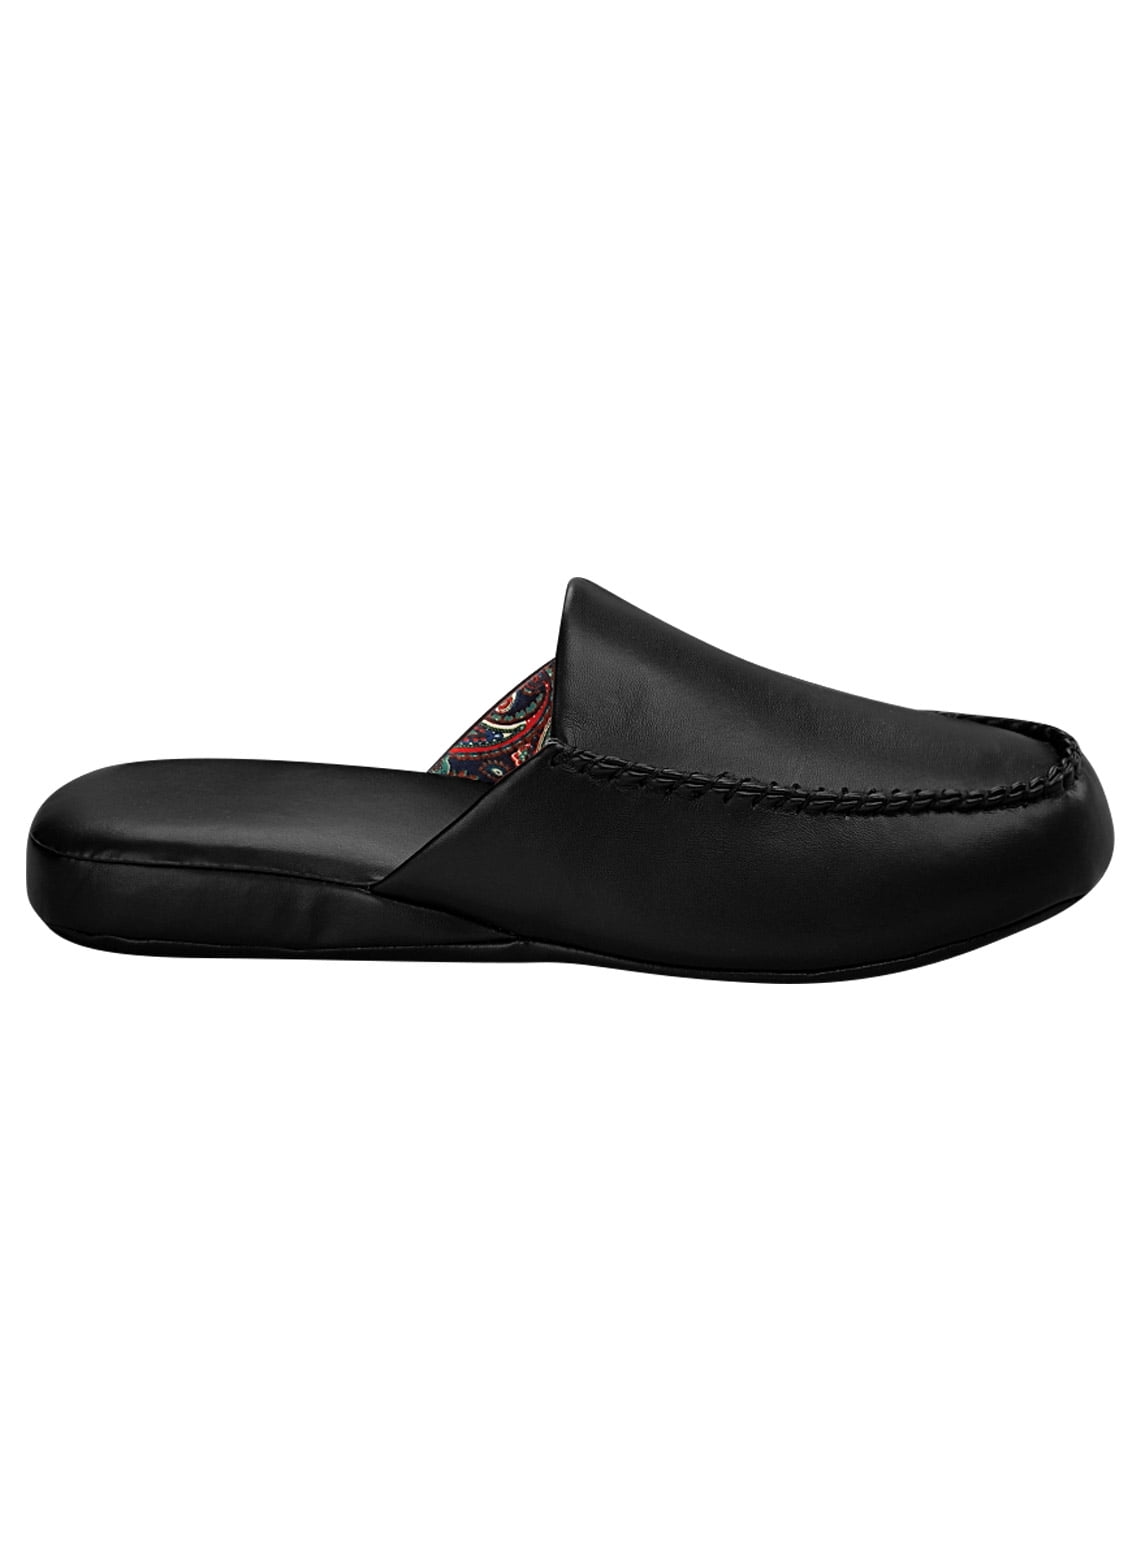 Buy > mens open heel slippers > in stock